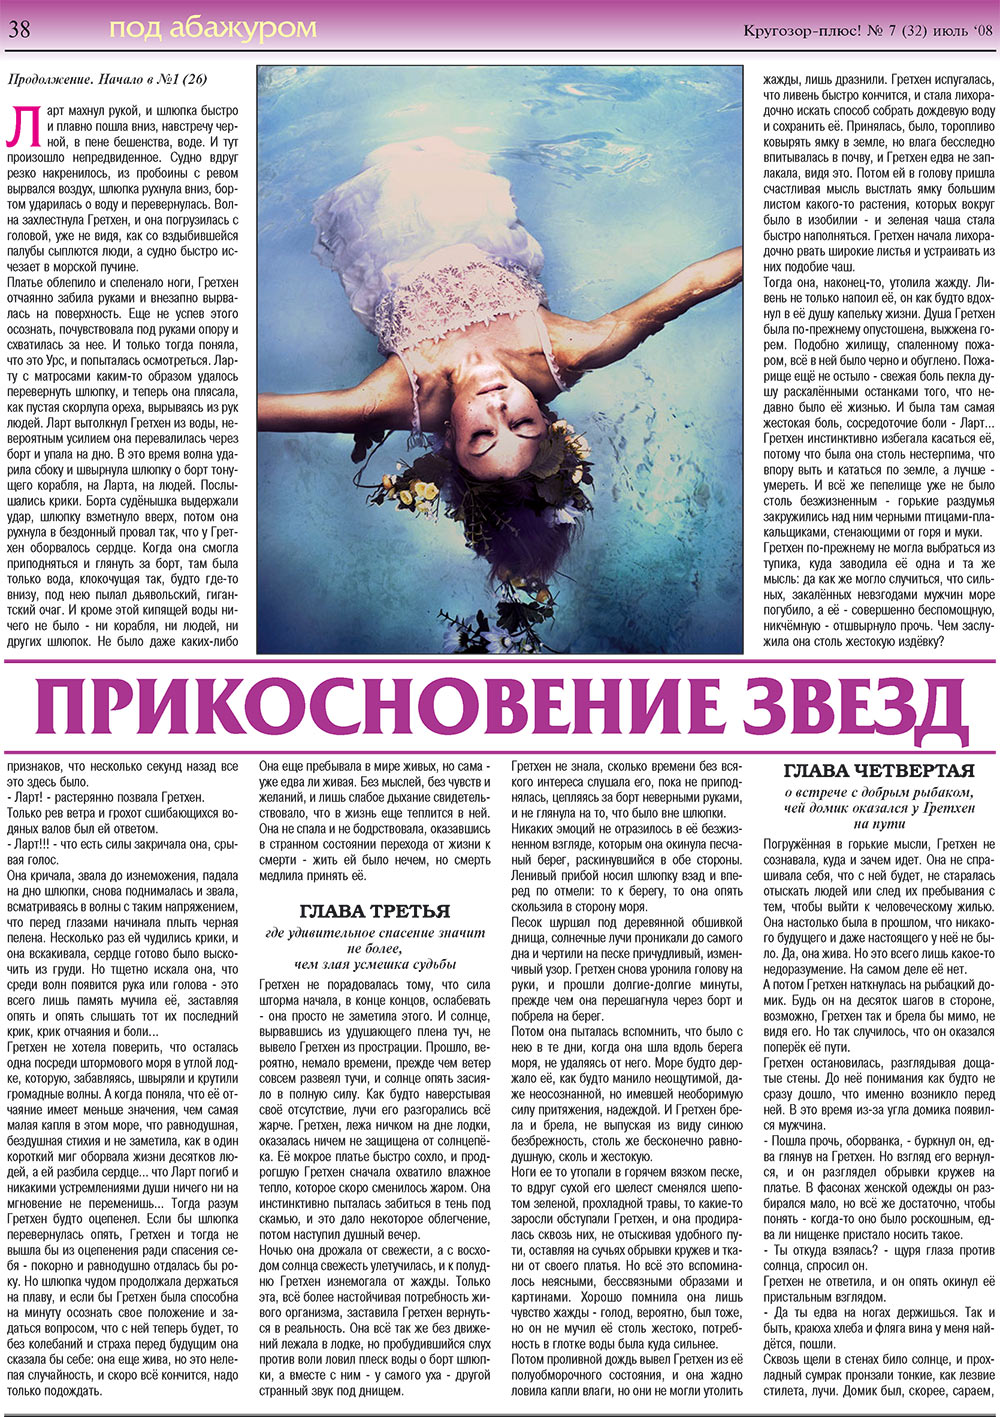 Кругозор плюс!, газета. 2008 №7 стр.38